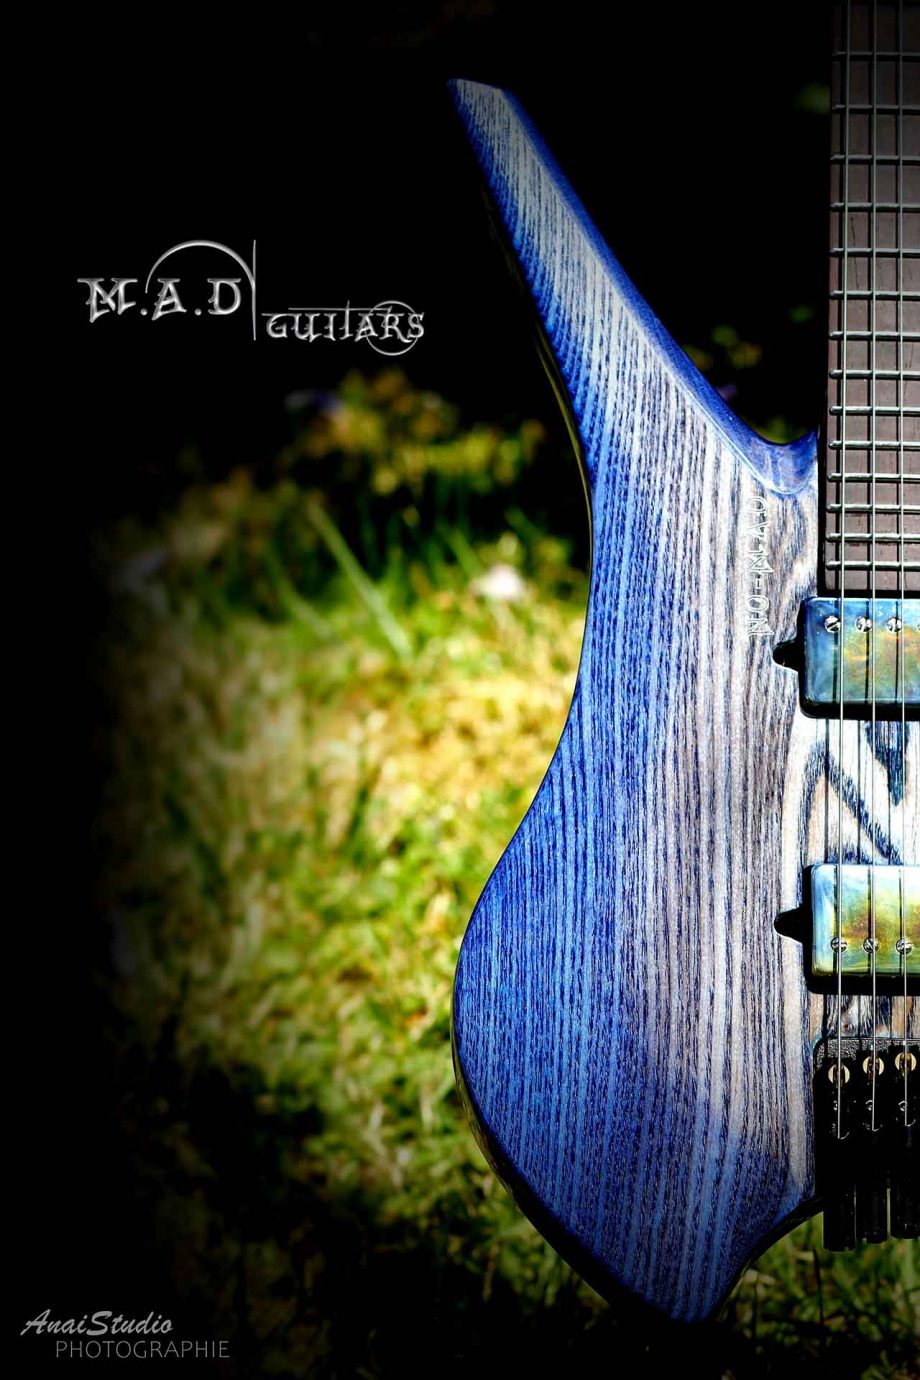 MAD Guitars No Mad Blue Cobalt